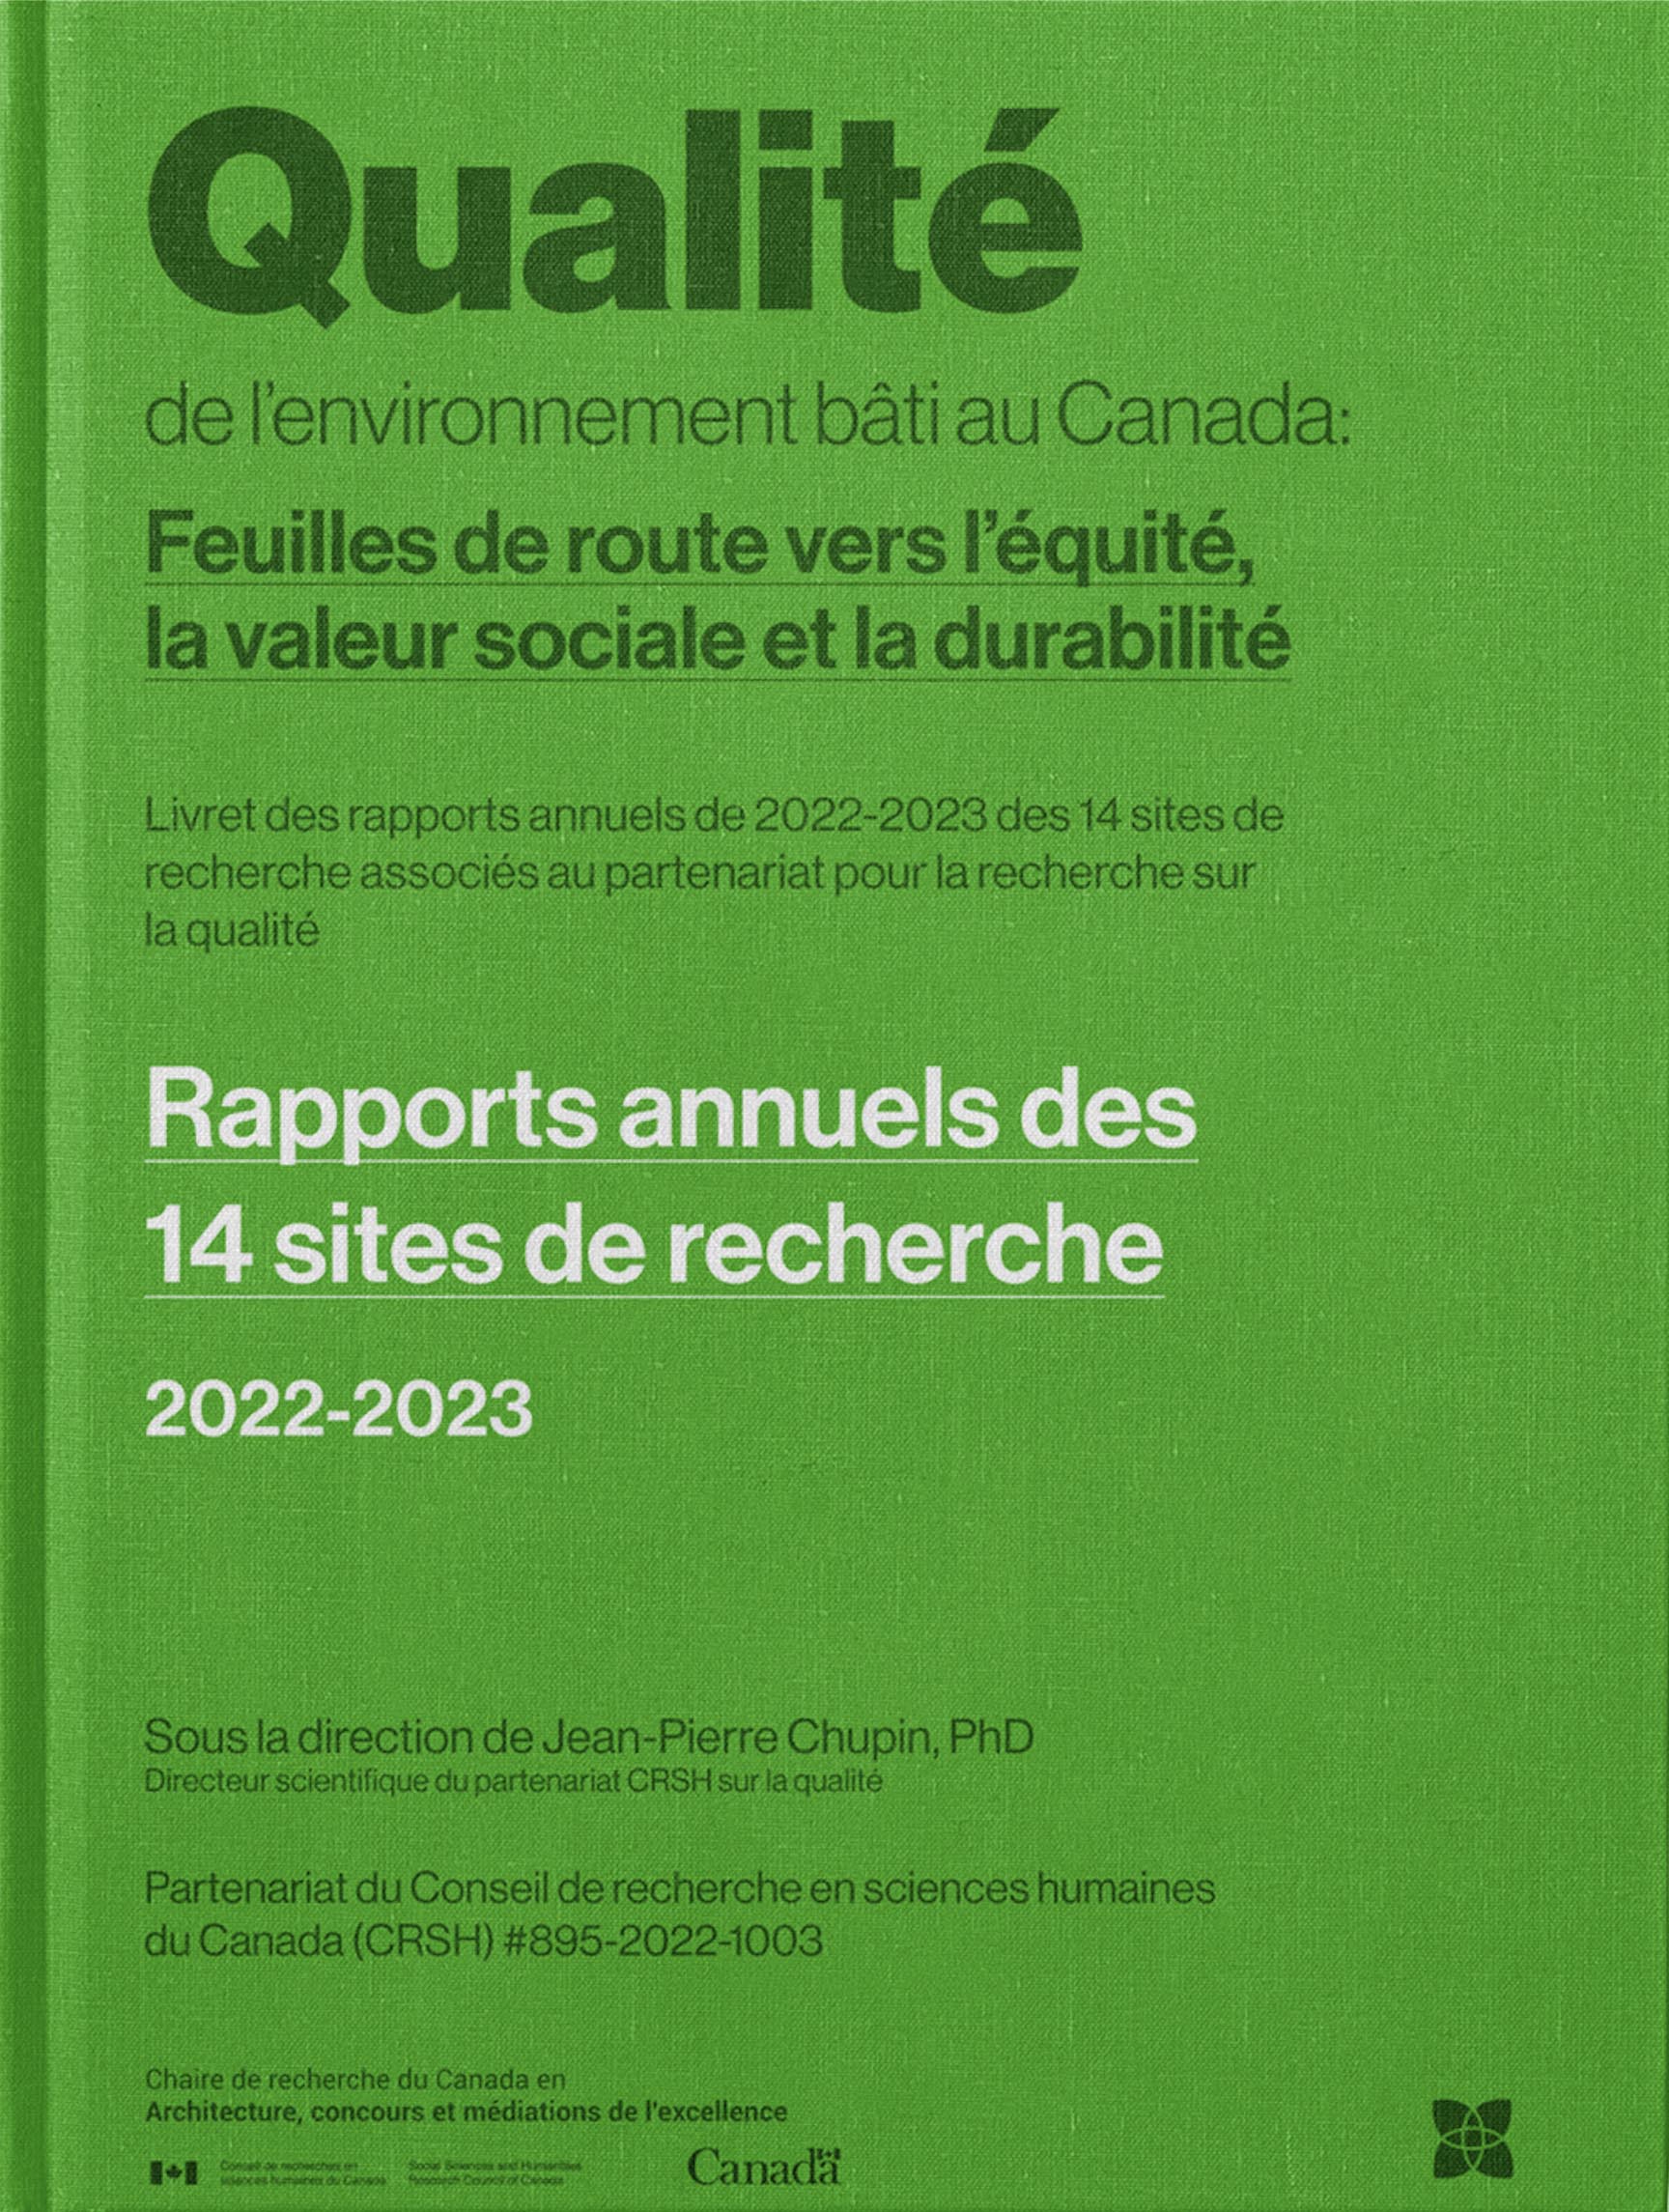 Rapports annuels des 14 sites de recherche. 2022-2023. Partenariat de recherche CRSH (#895-2022-1003). Sous la direction de Jean-Pierre Chupin, 2023, Université de Montréal. 80 pages